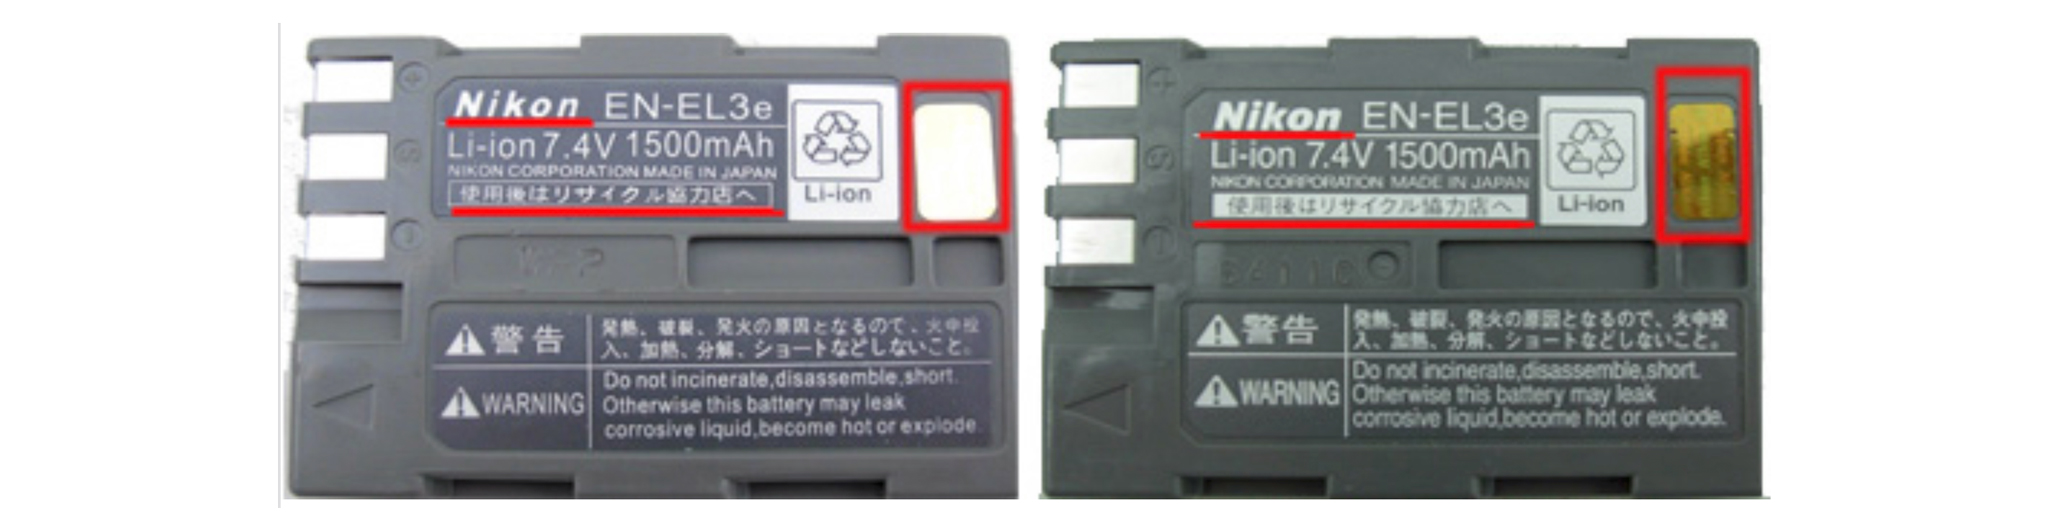 Nikon-EN-EL3e-5.jpg